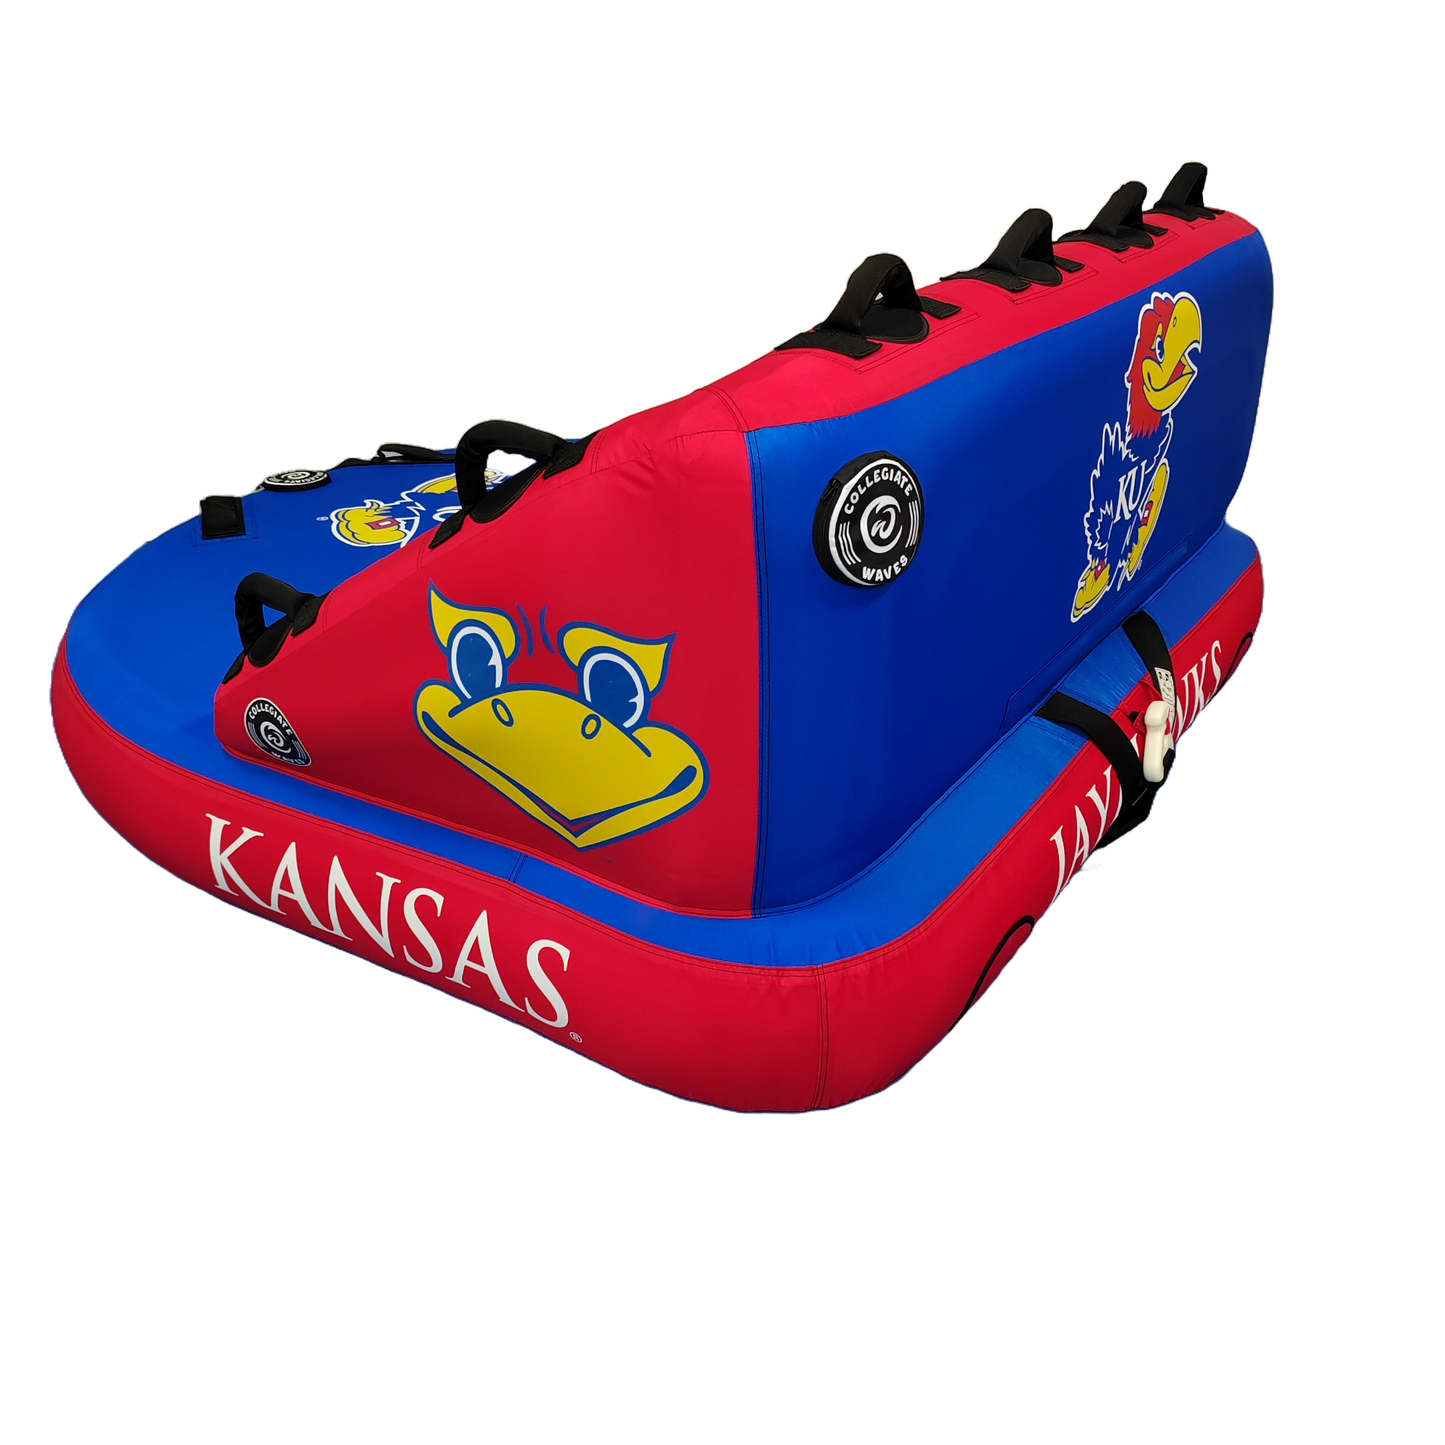 Kansas "The Coach" Towable Tube